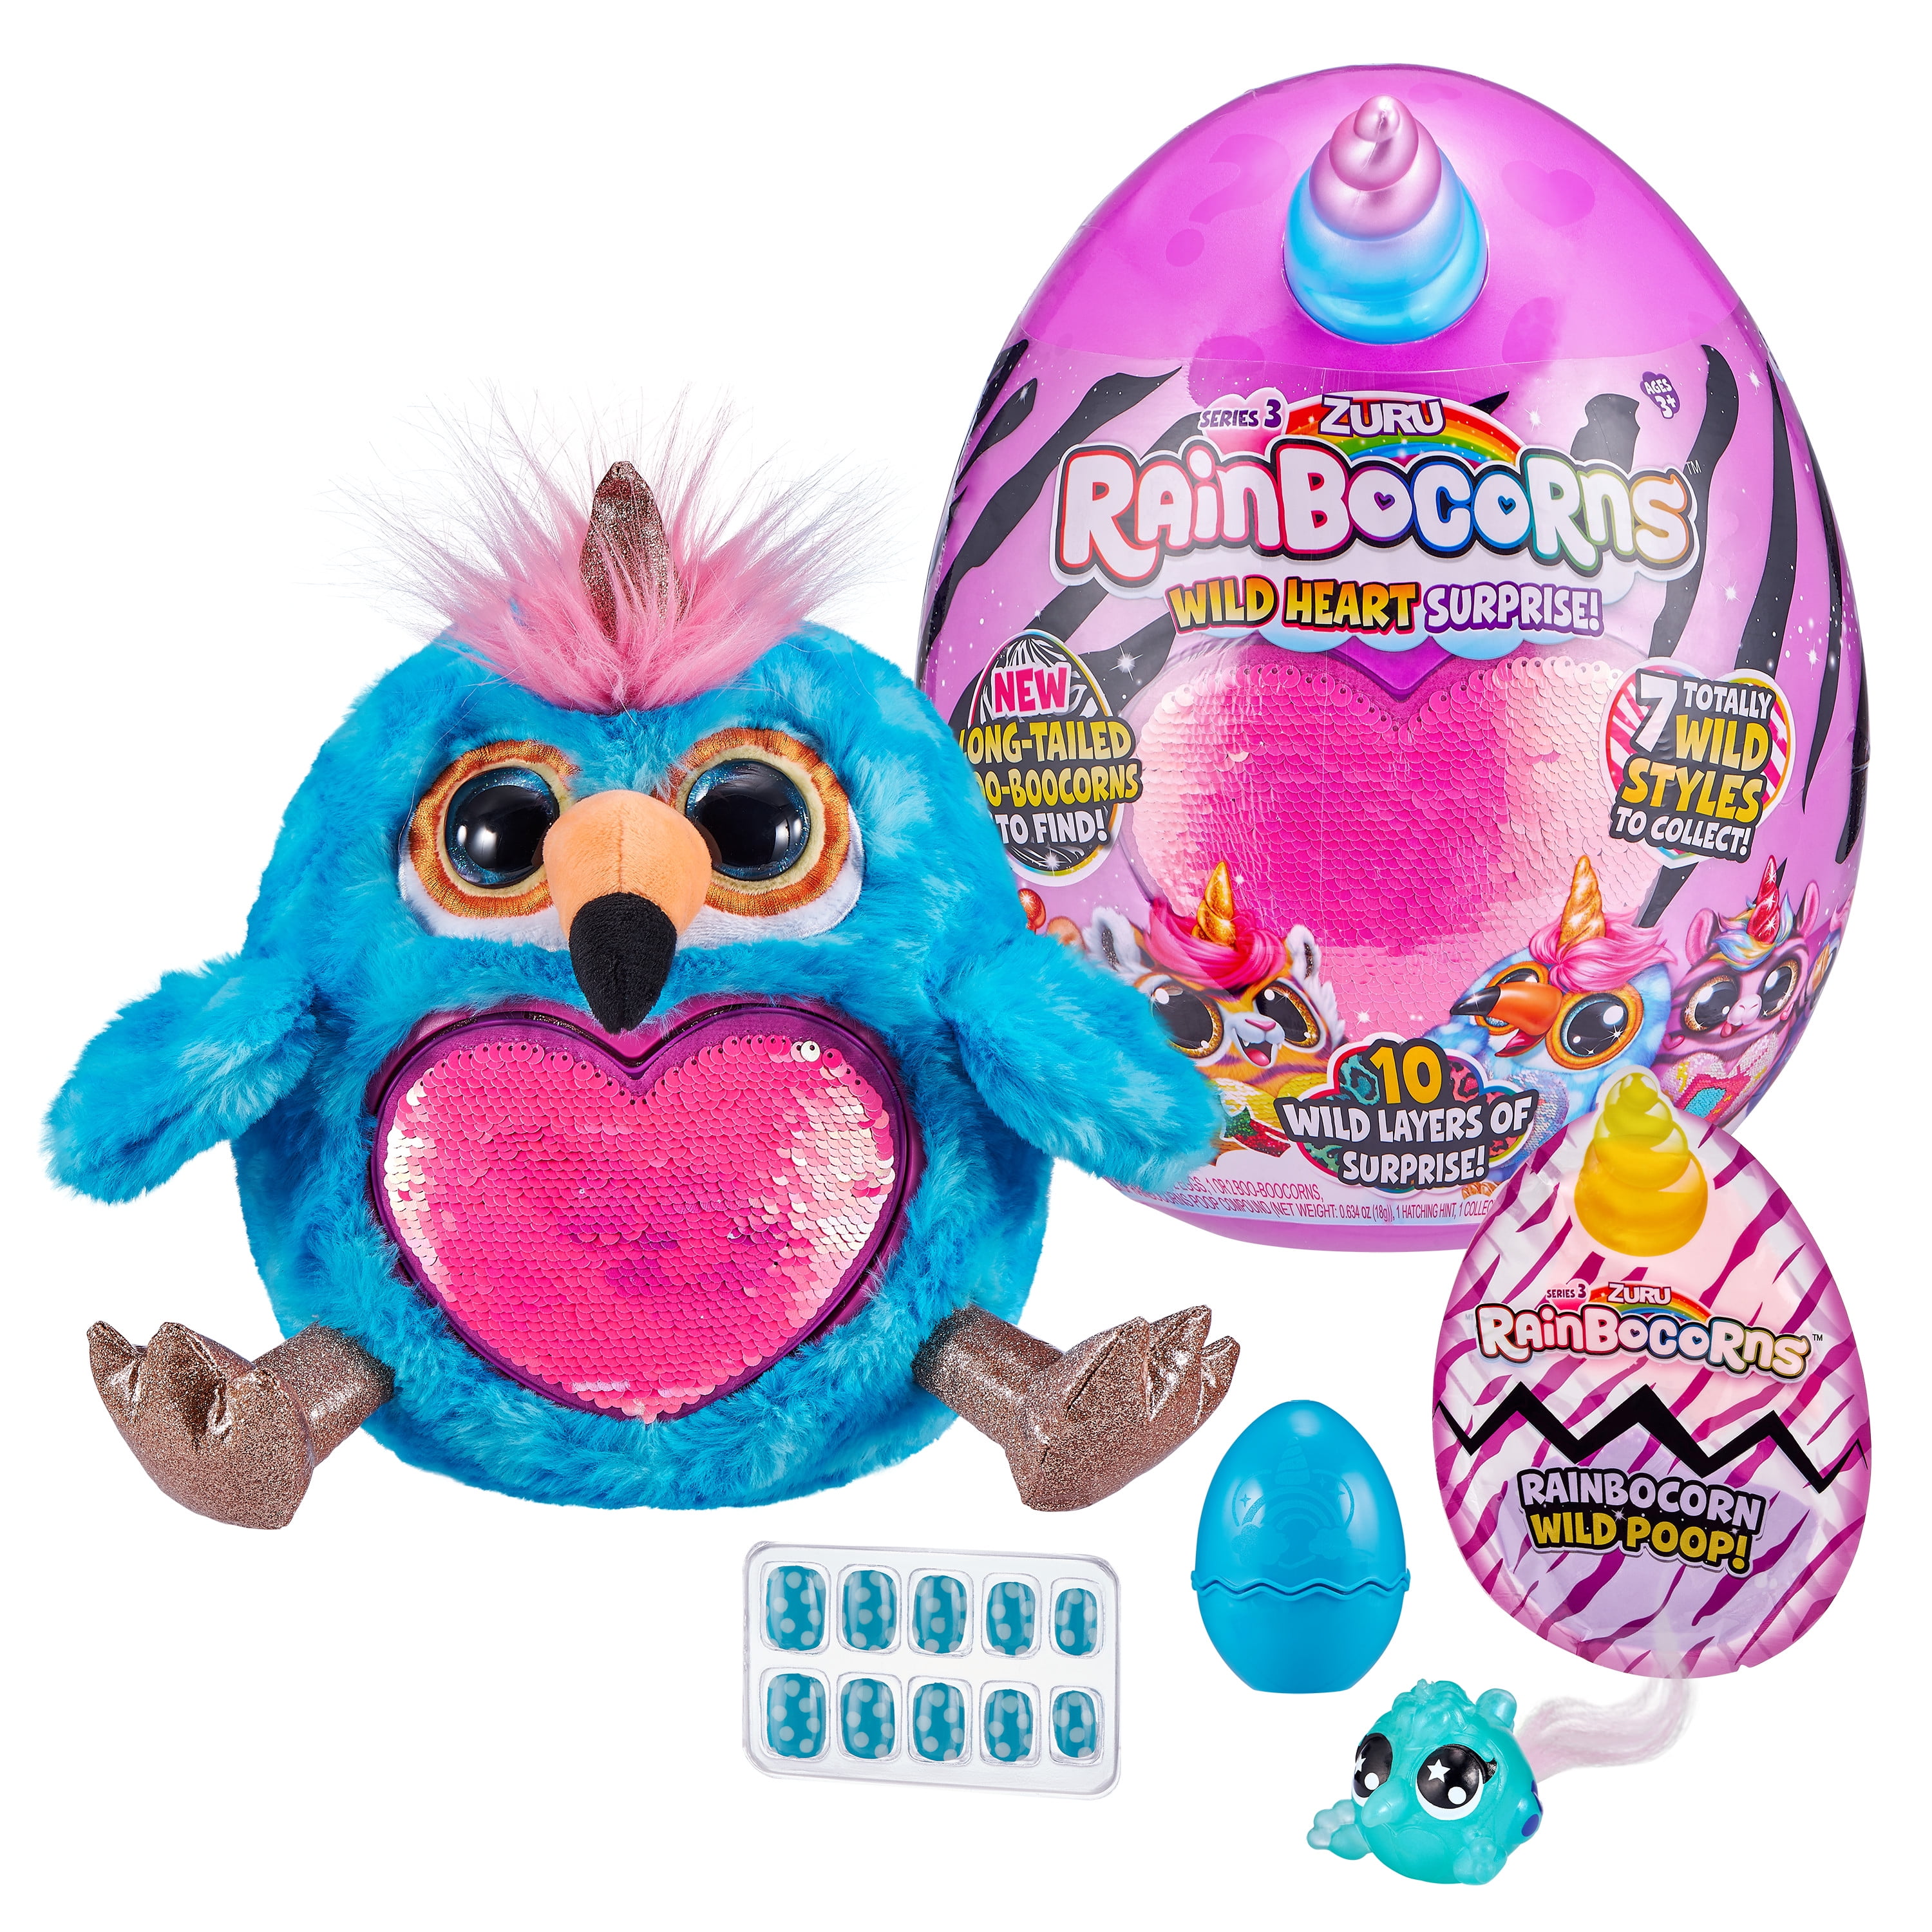 Rainbocorns яйцо сюрприз. Игрушка Zuru Rainbocorns s3. Игровой набор Zuru Rainbocorns сюрприз в яйце с аксессуарами. Rainbocorns игрушка яйцо.